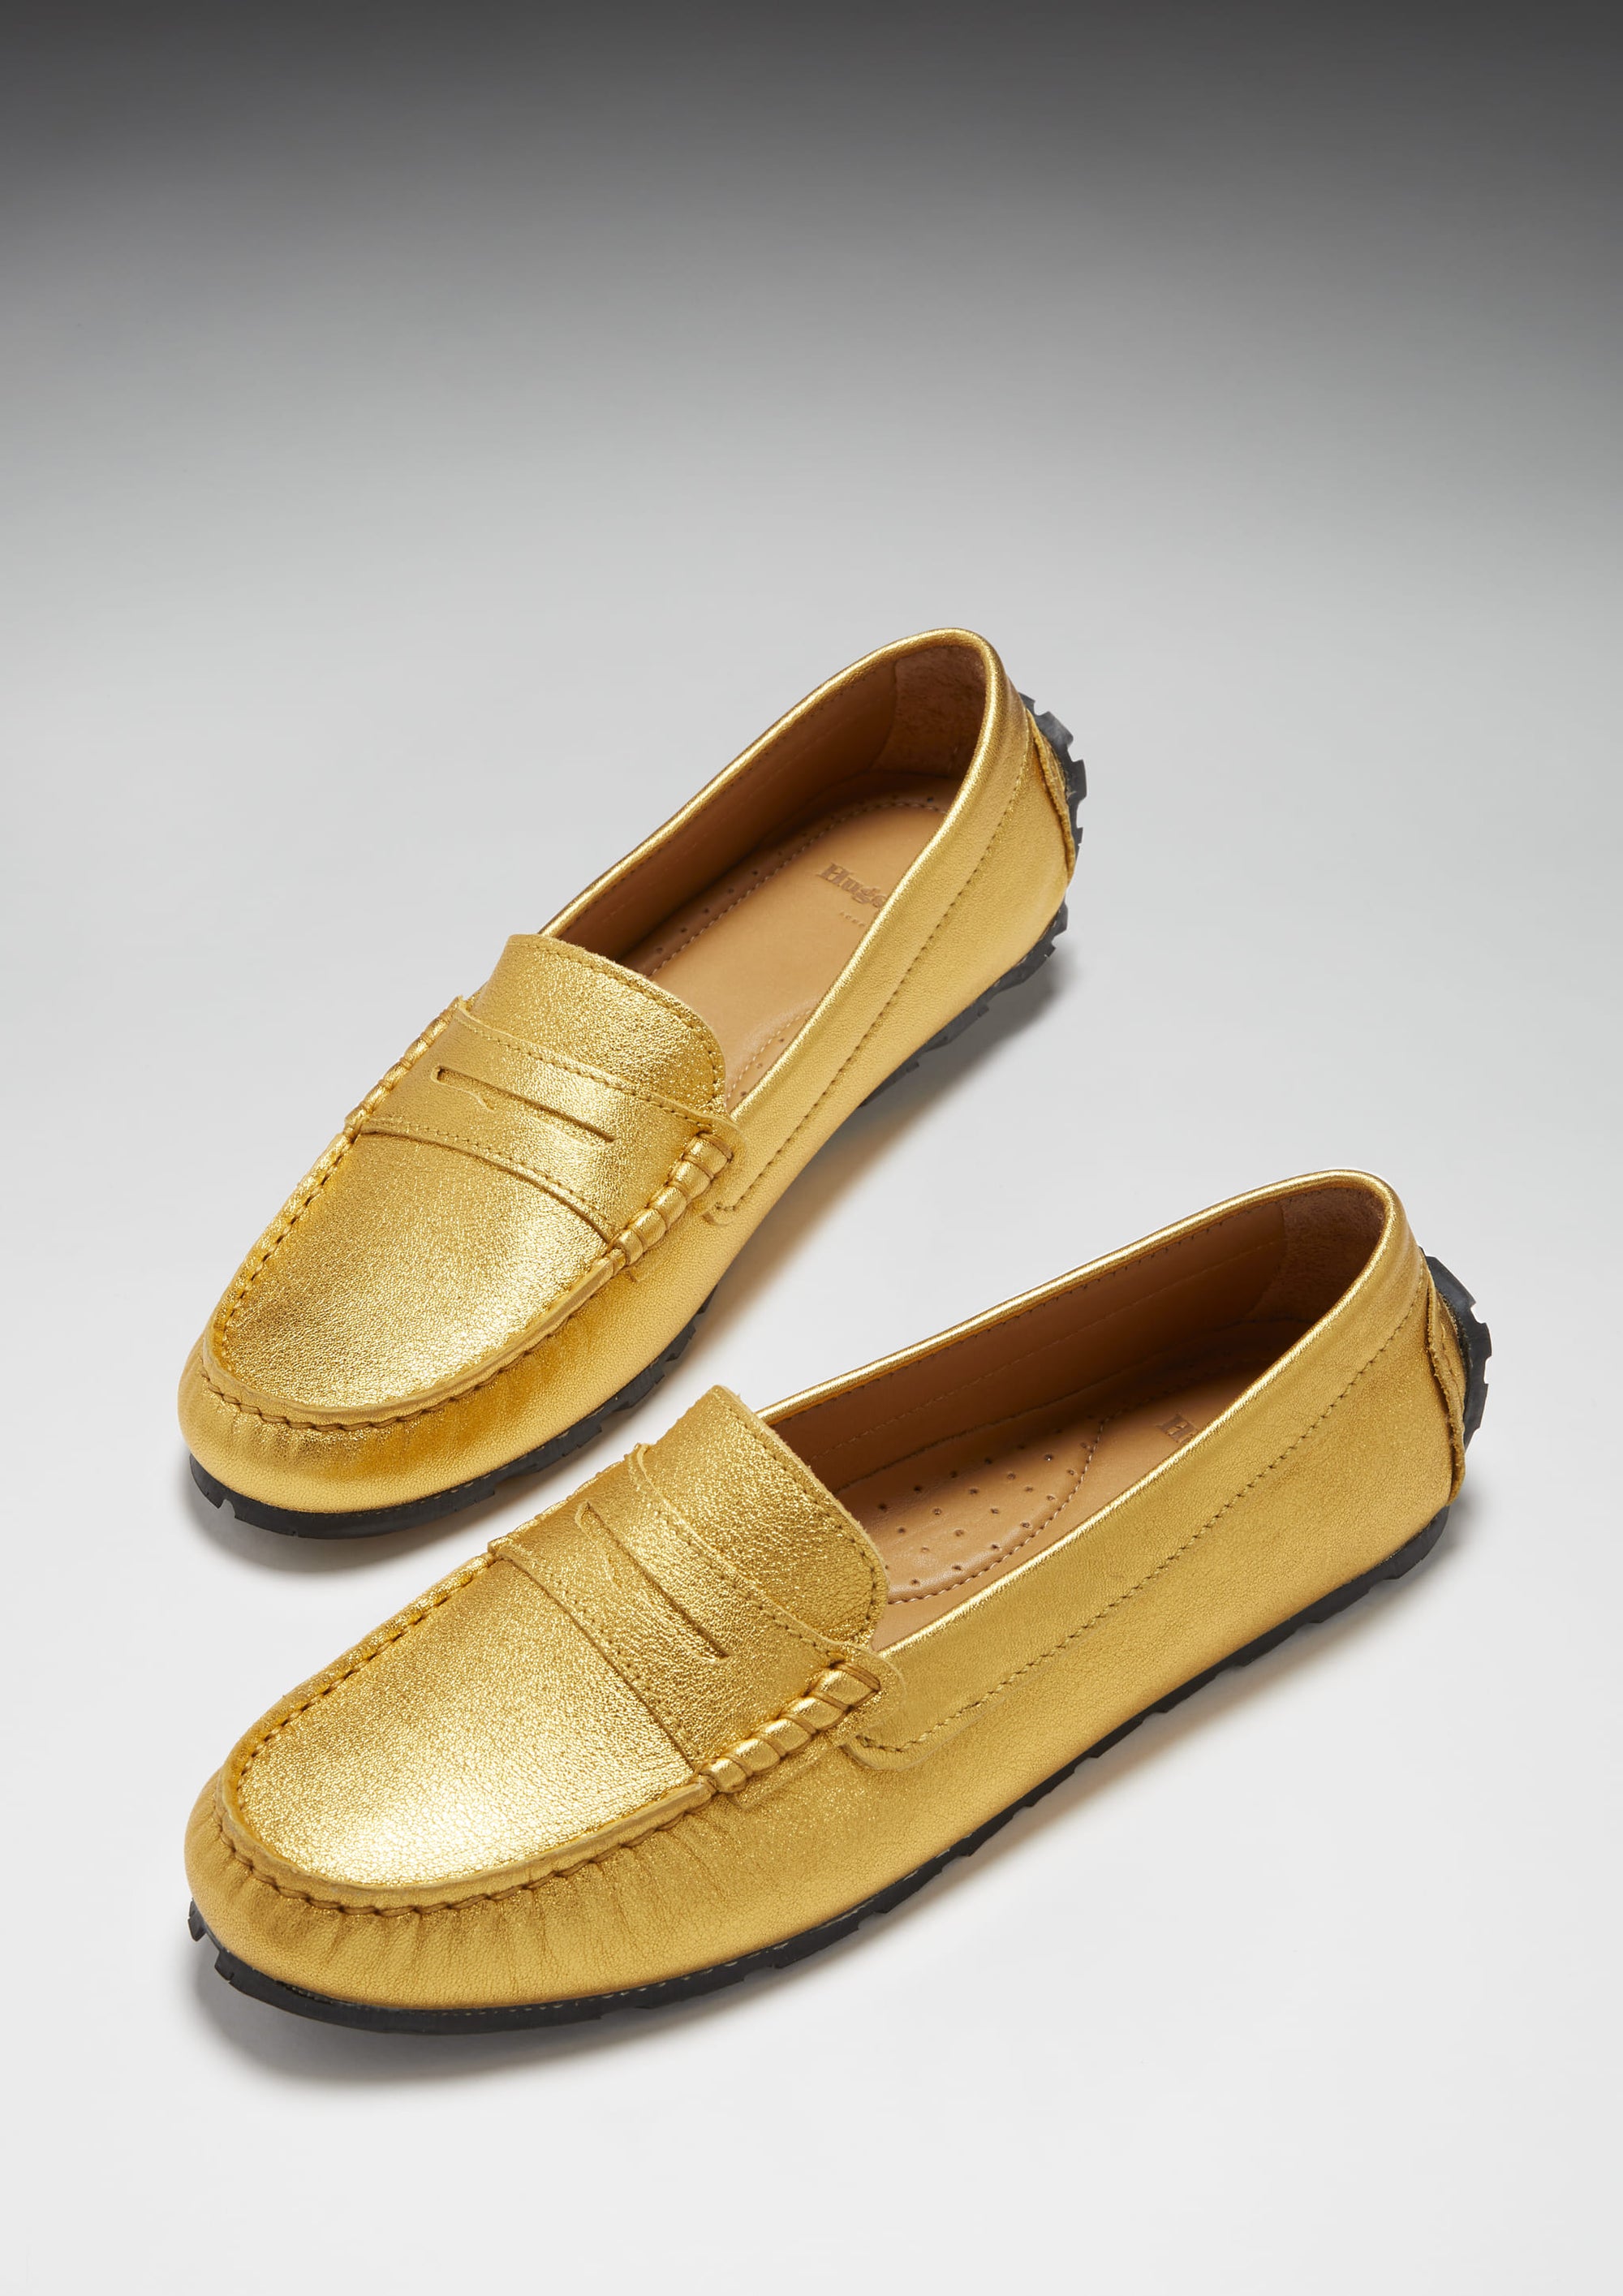 Damen-Penny-Loafer mit Reifensohle, gelbgoldenes Leder